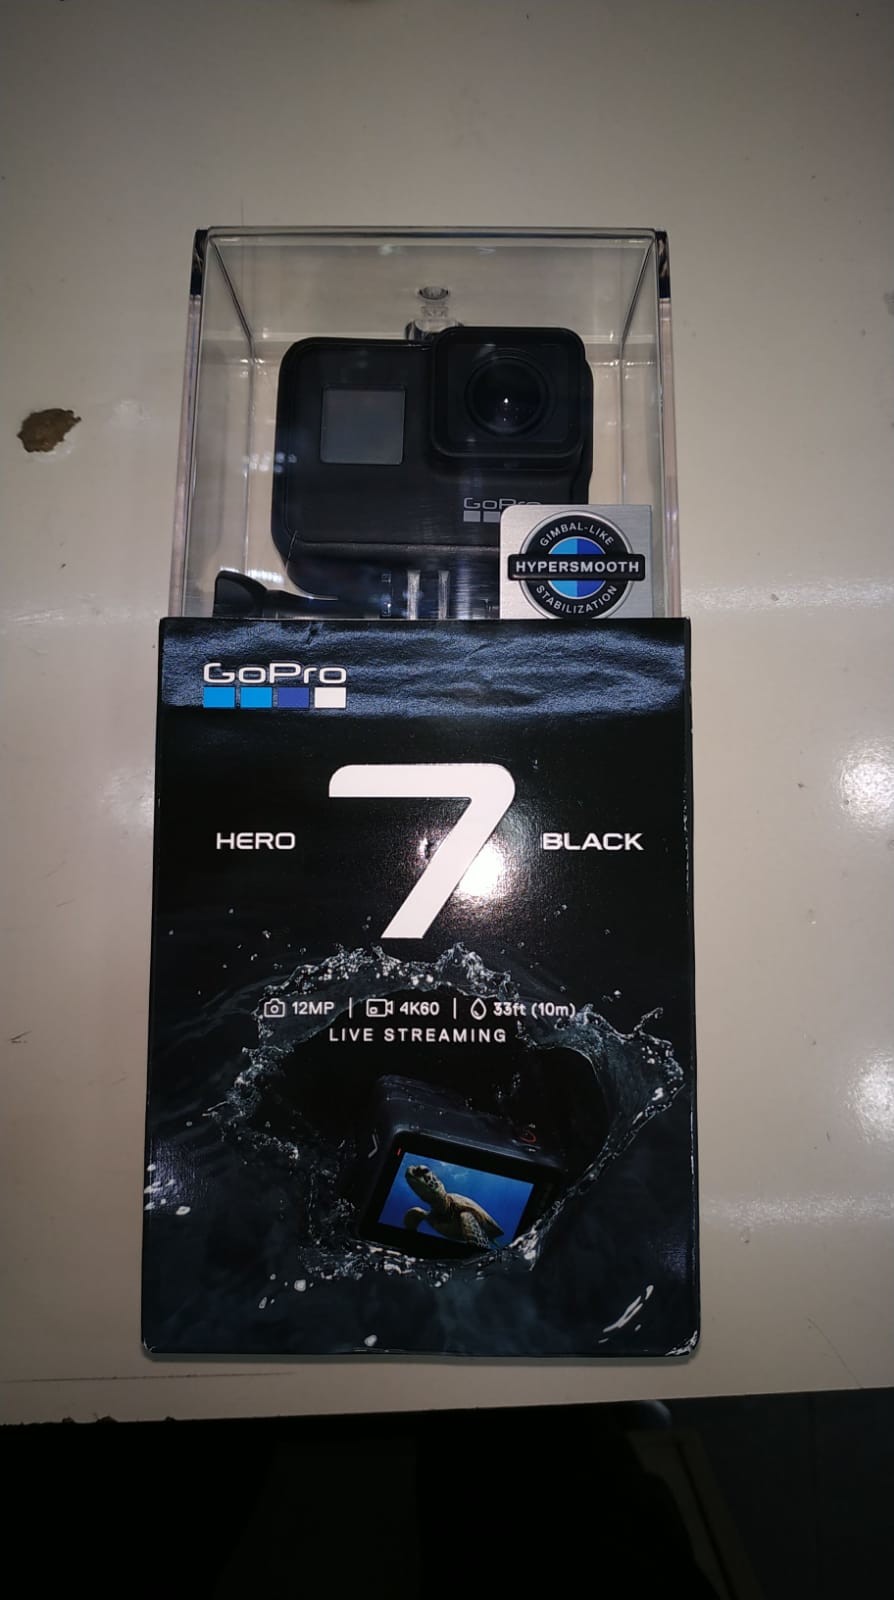 FIRSAT Sıfır GoPro Hero7 Black Aksiyon Kamera